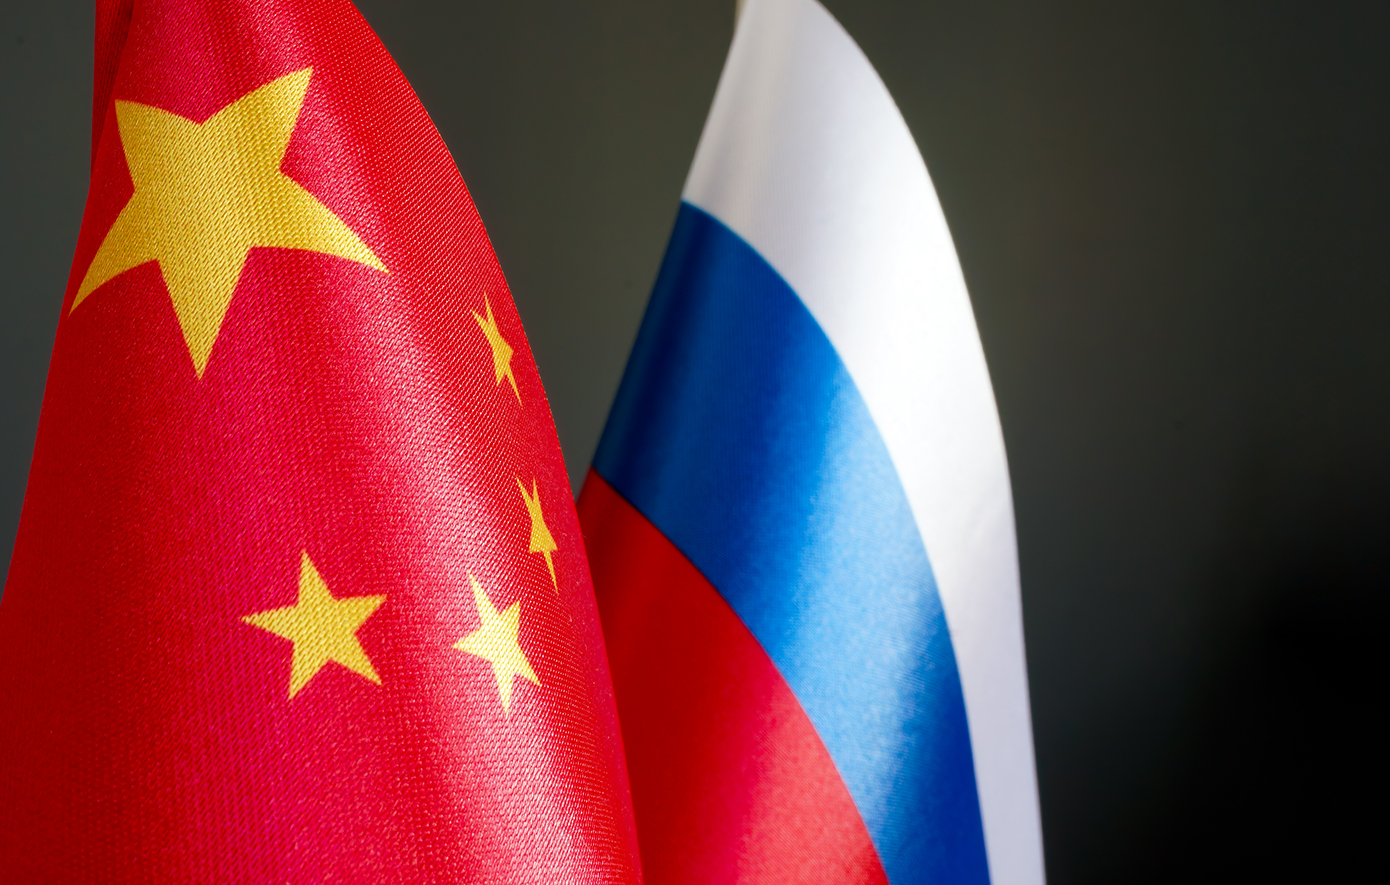 Πώς Κίνα και Ρωσία παρακάμπτουν τις αμερικανικές κυρώσεις και έχουν οικονομικές συναλλαγές